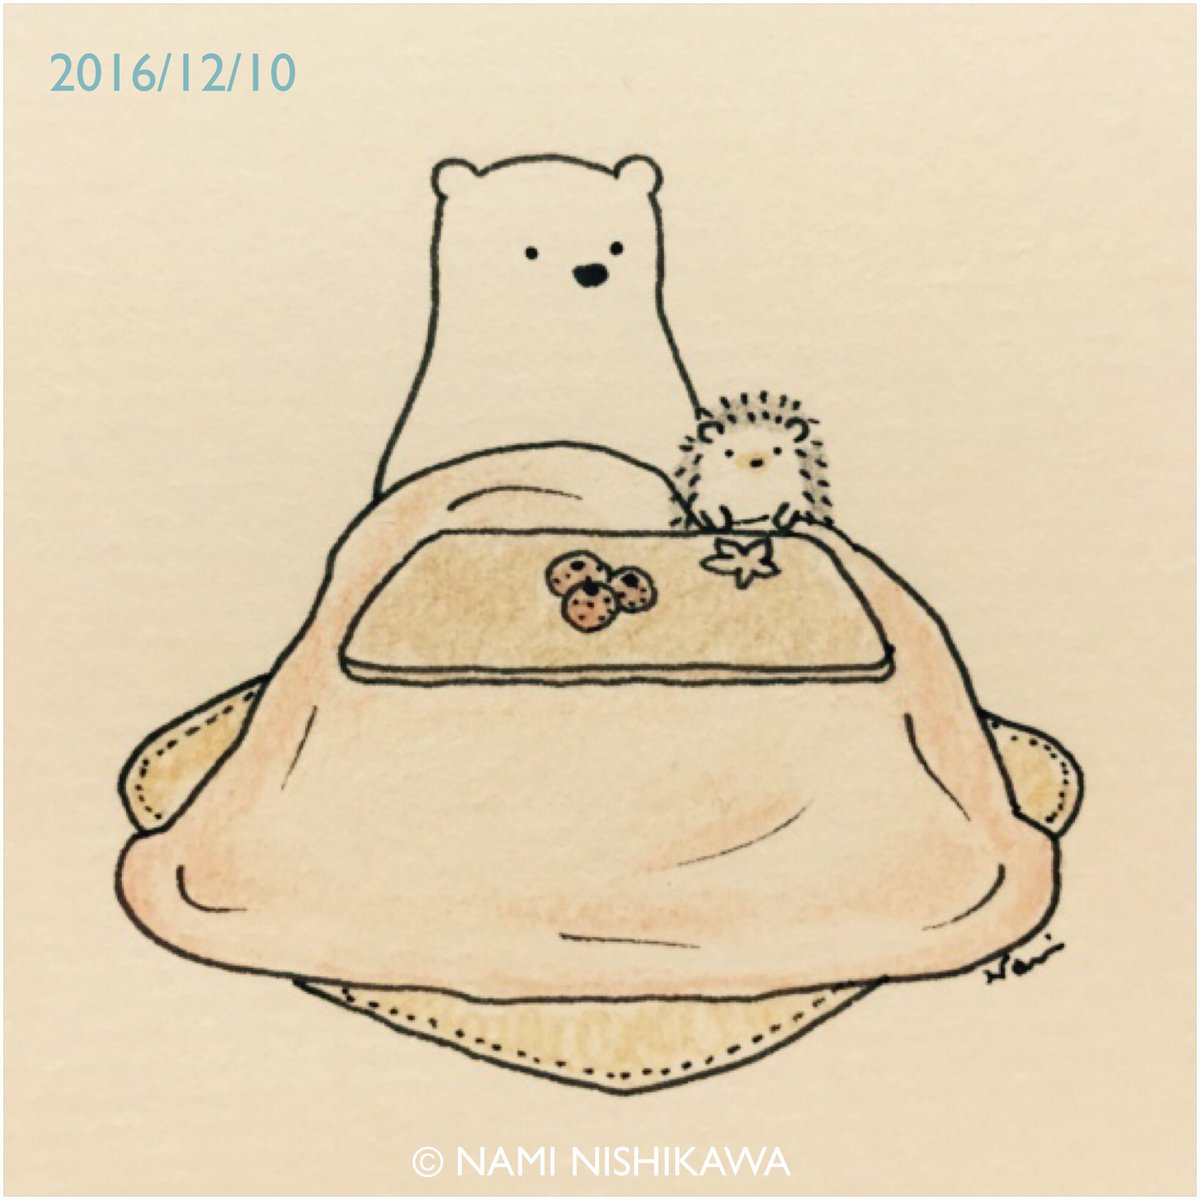 にしかわなみ なみはりねずみ Auf Twitter 1057 おこた Kotatsu Illustration Hedgehog Polarbear イラスト ハリネズミ シロクマ なみはりねずみ